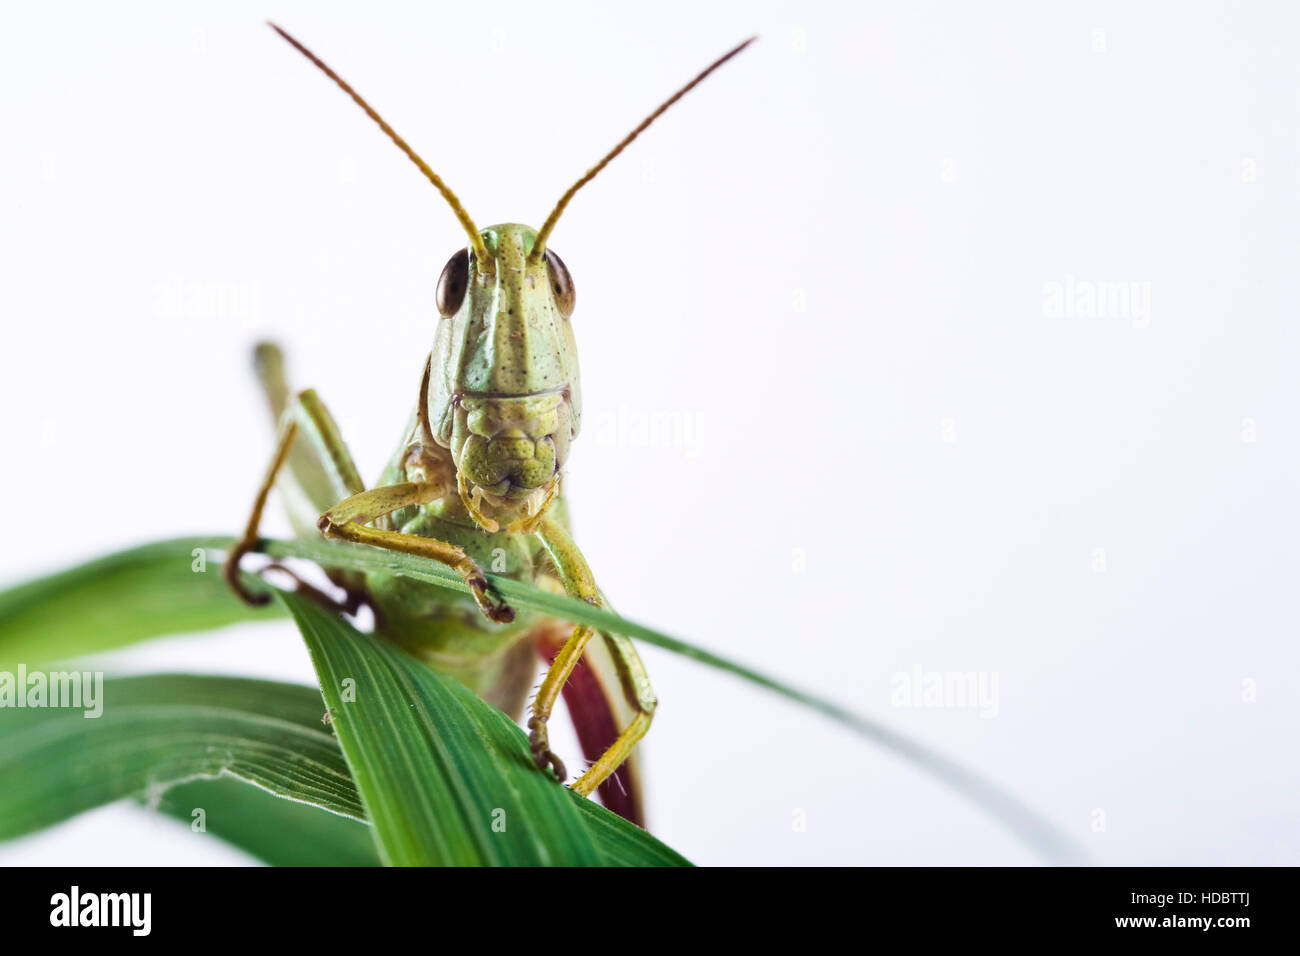 Meadow Grasshopper (Chorthippus parallelus) Stock Photo